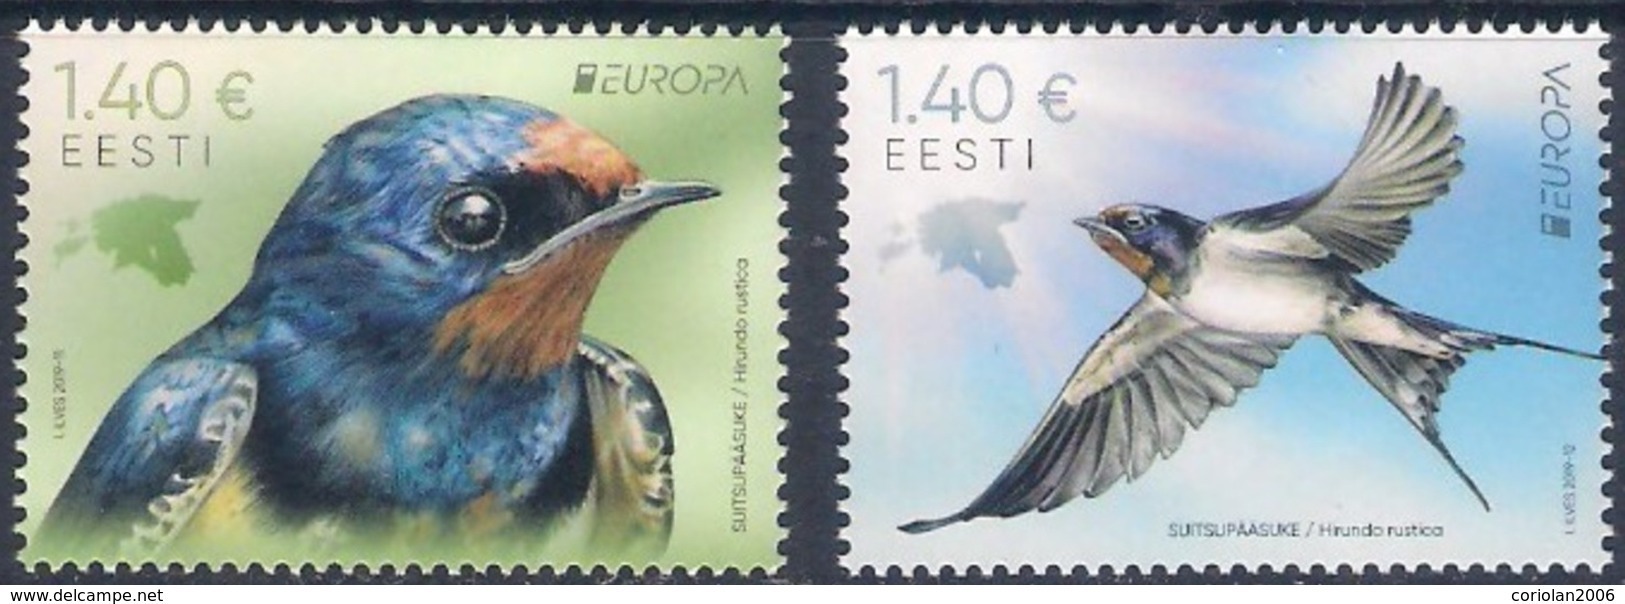 Europa 2019 / Estonia / Set 2 Stamps - 2019